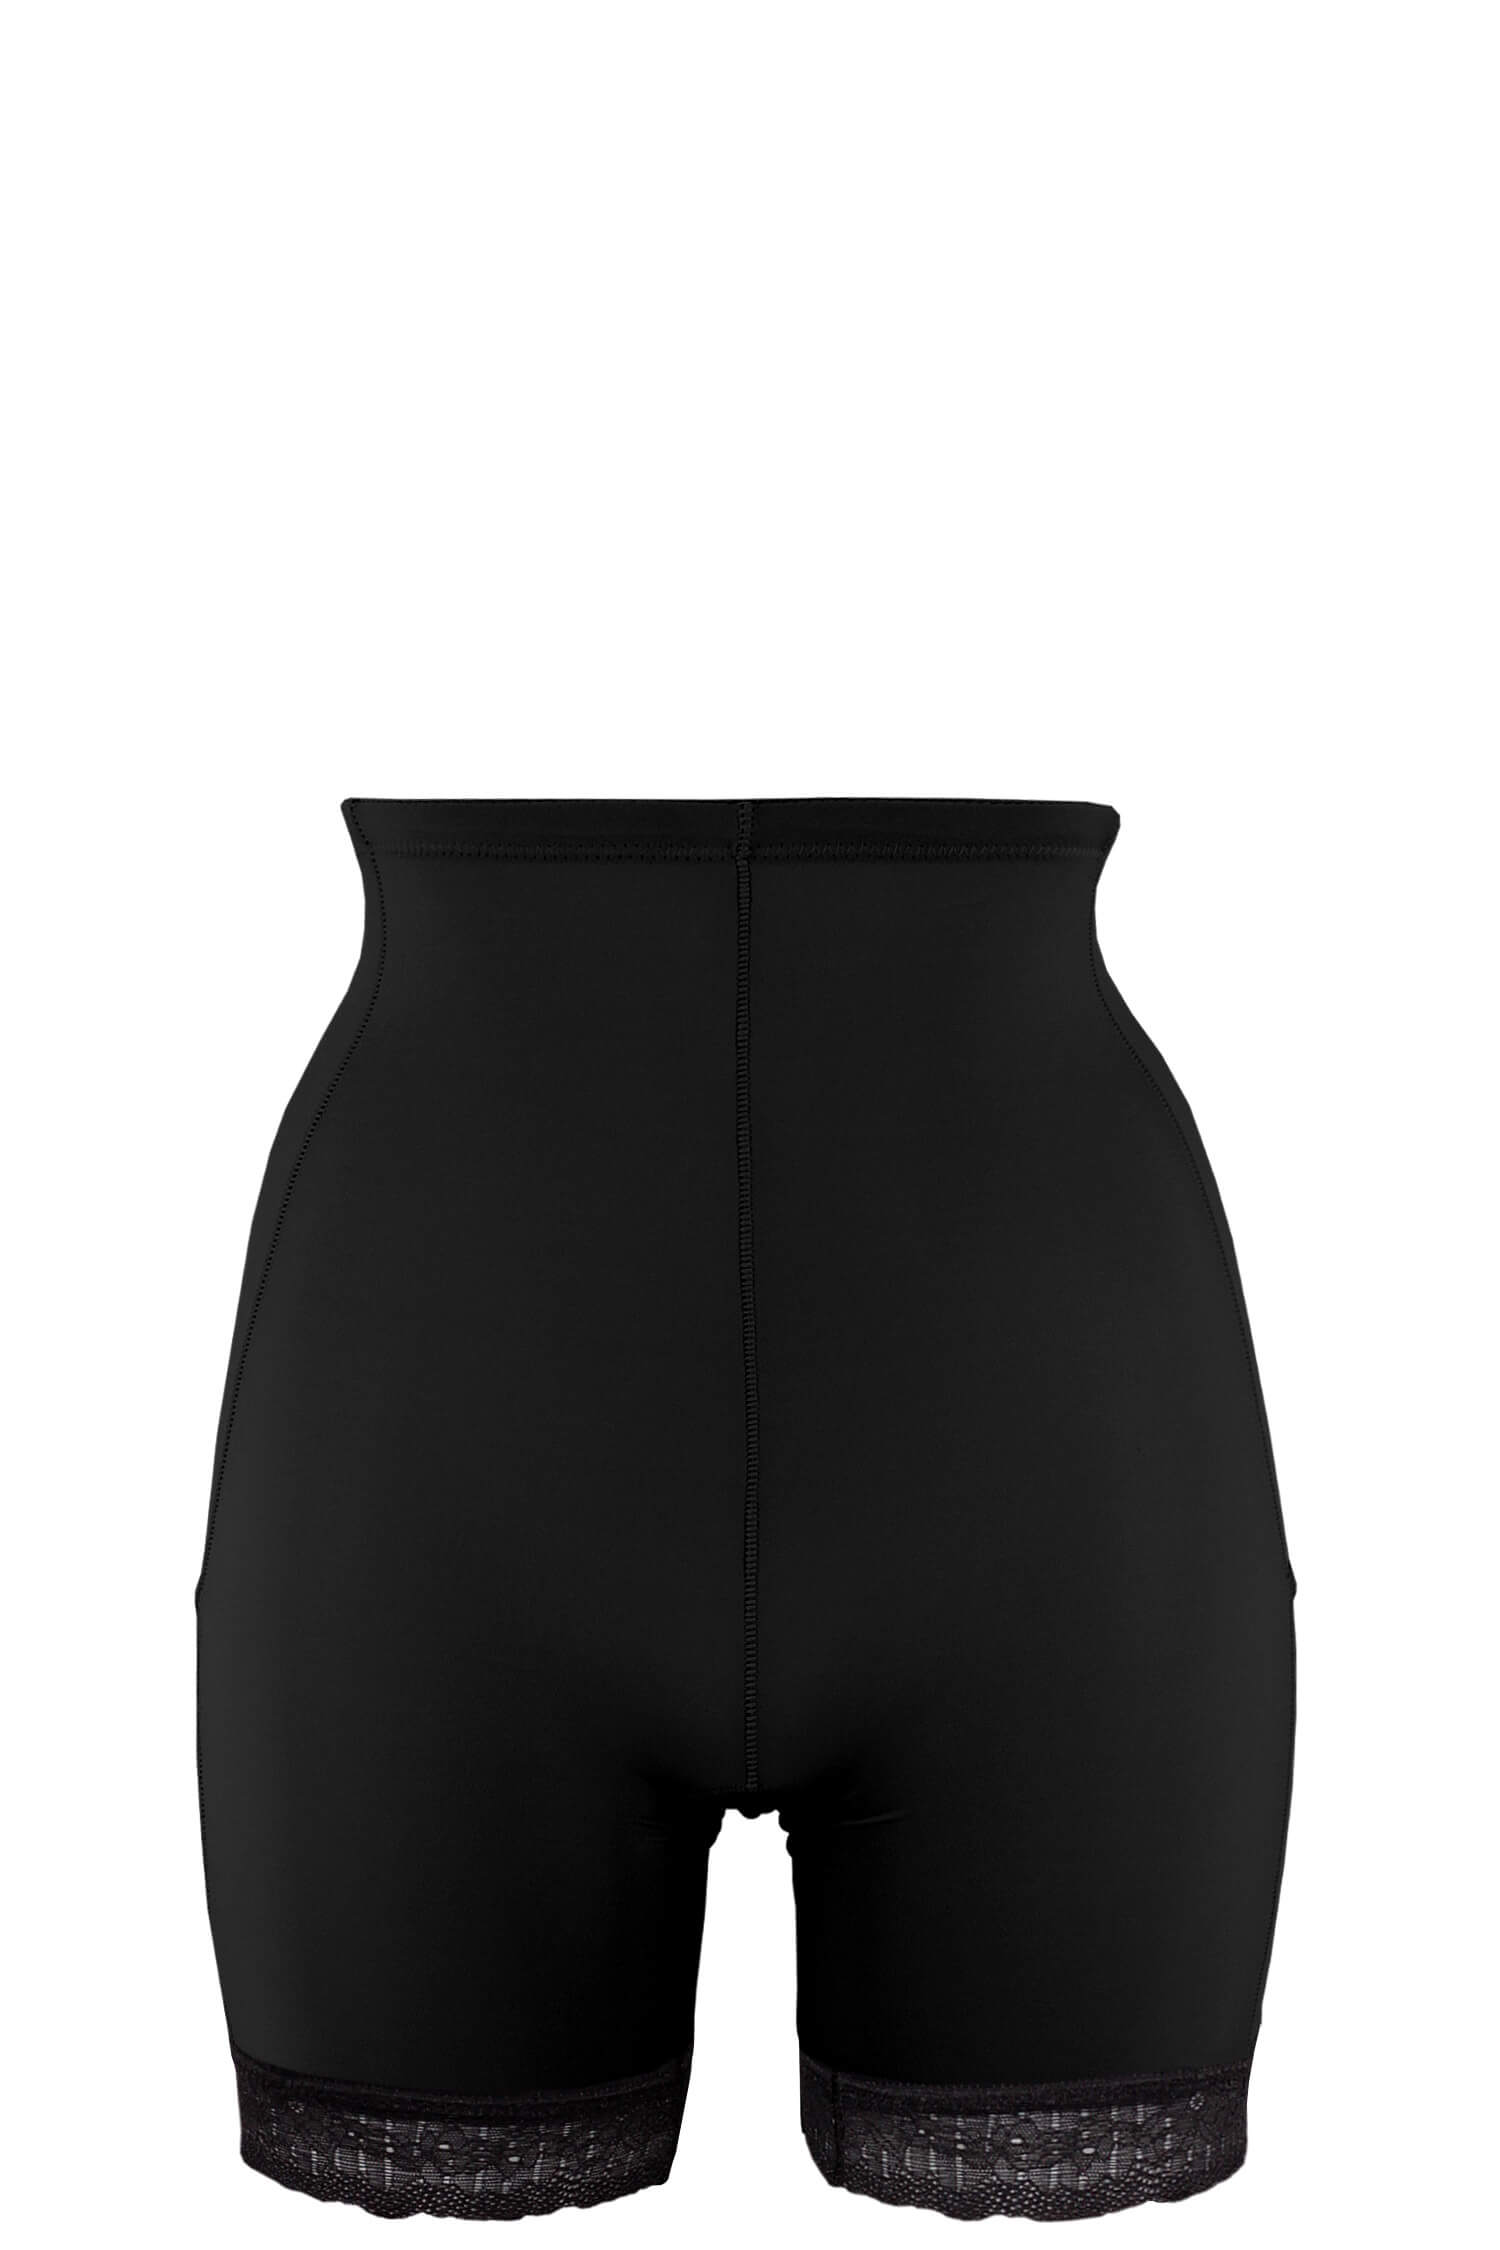 Floreta stahovací kalhotky do pasu s nohavičkou 5589 M černá